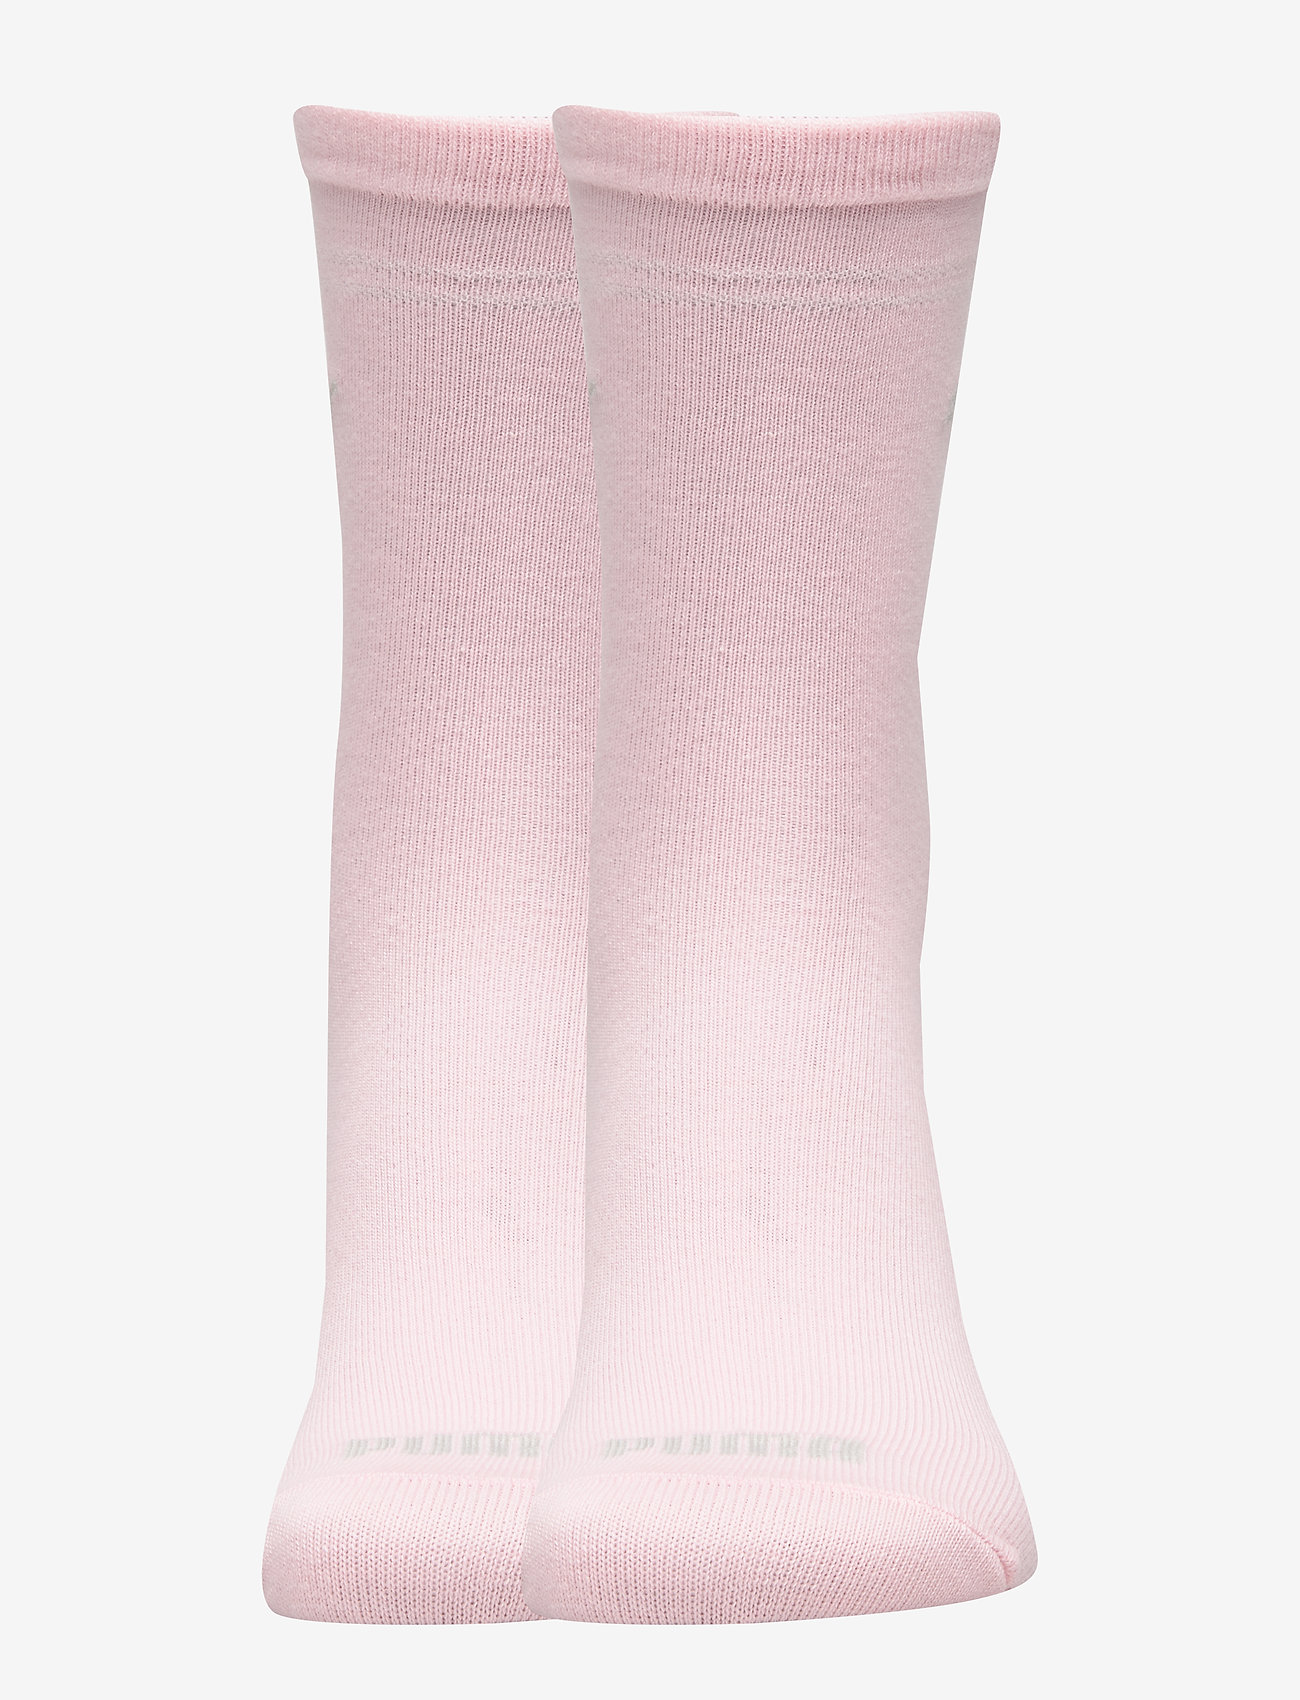 Puma Sock 2p Women (Pink) (7 €) - PUMA - | Boozt.com